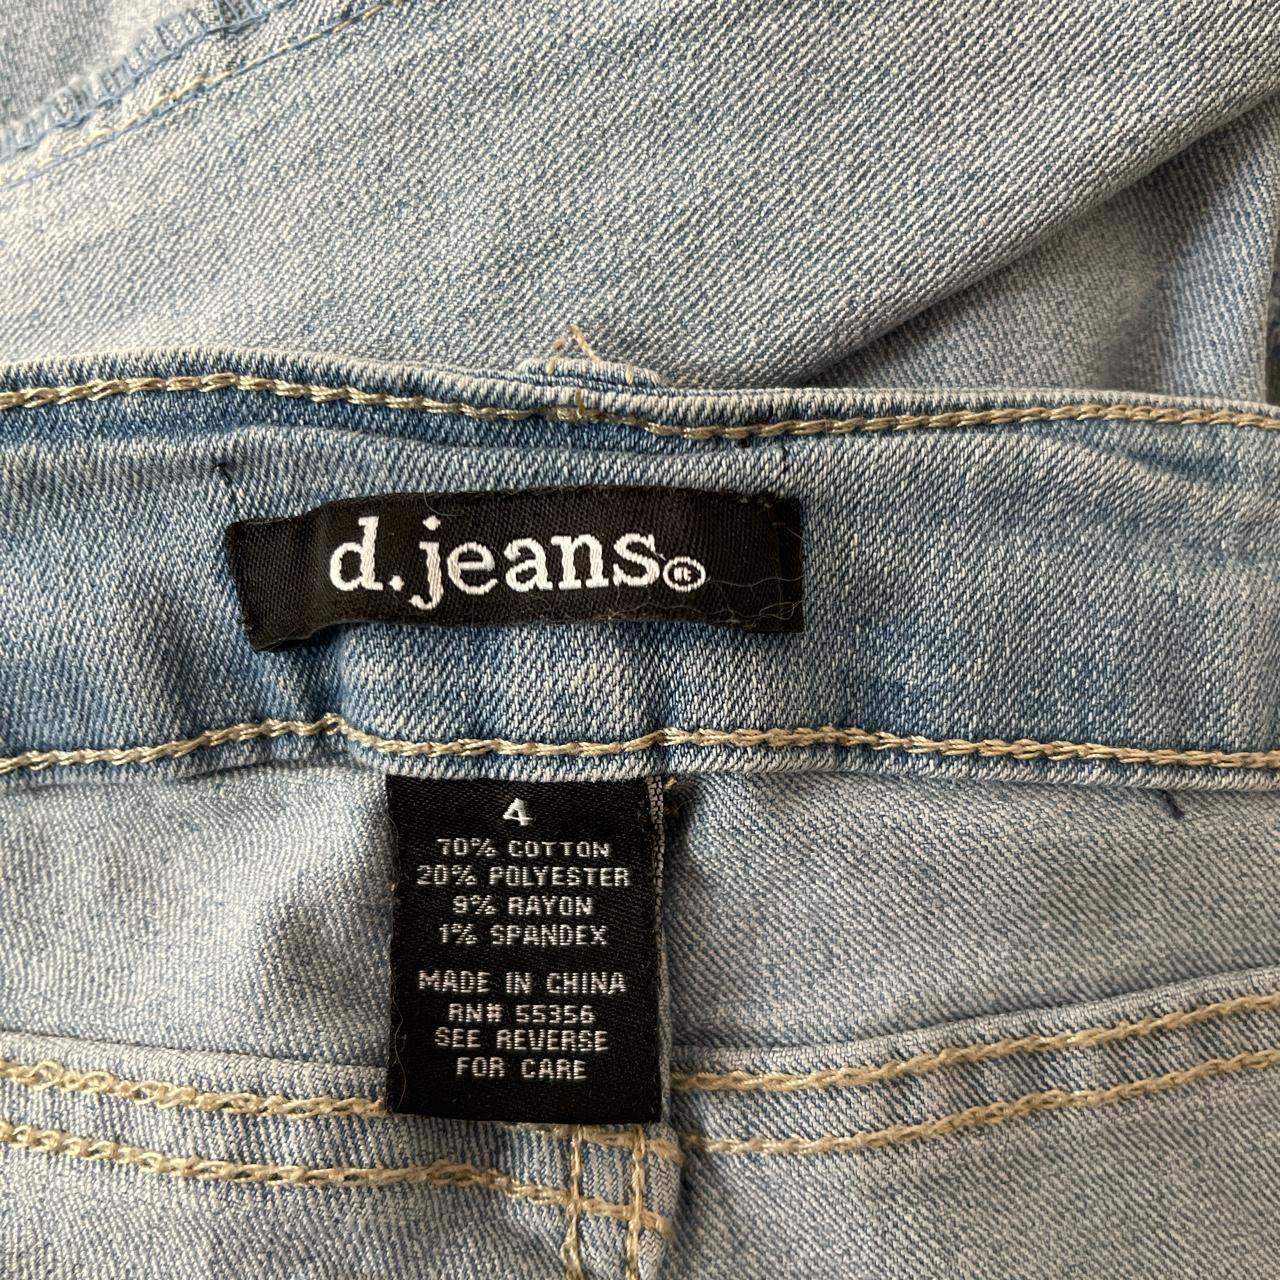 ledsager bundt support d. jeans skinny jeans. size 4. Light wash. Soft and... - Depop